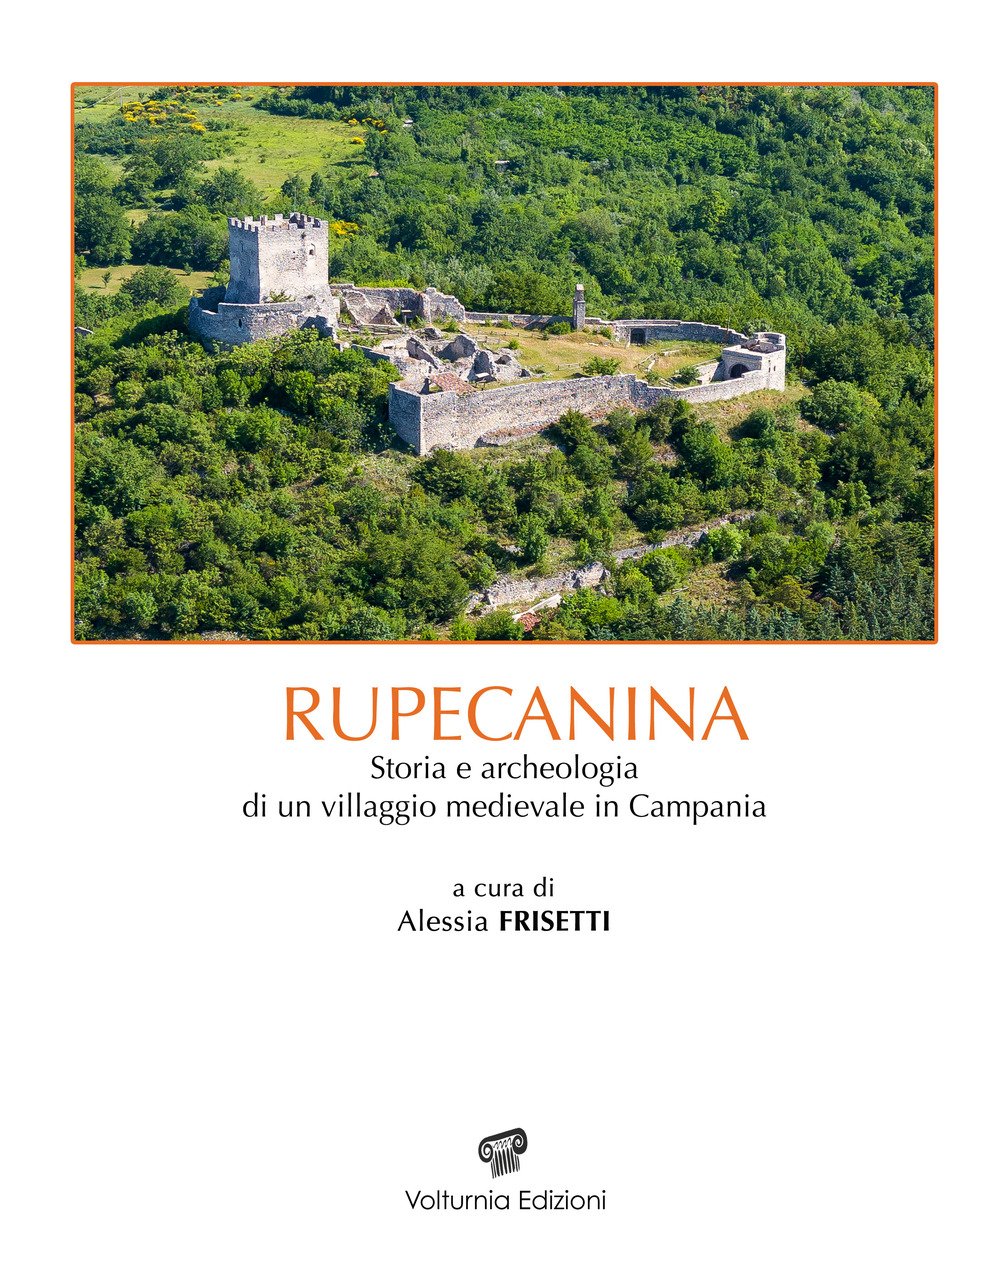 Rupecanina. Storia e archeologia di un villaggio medievale in Campania